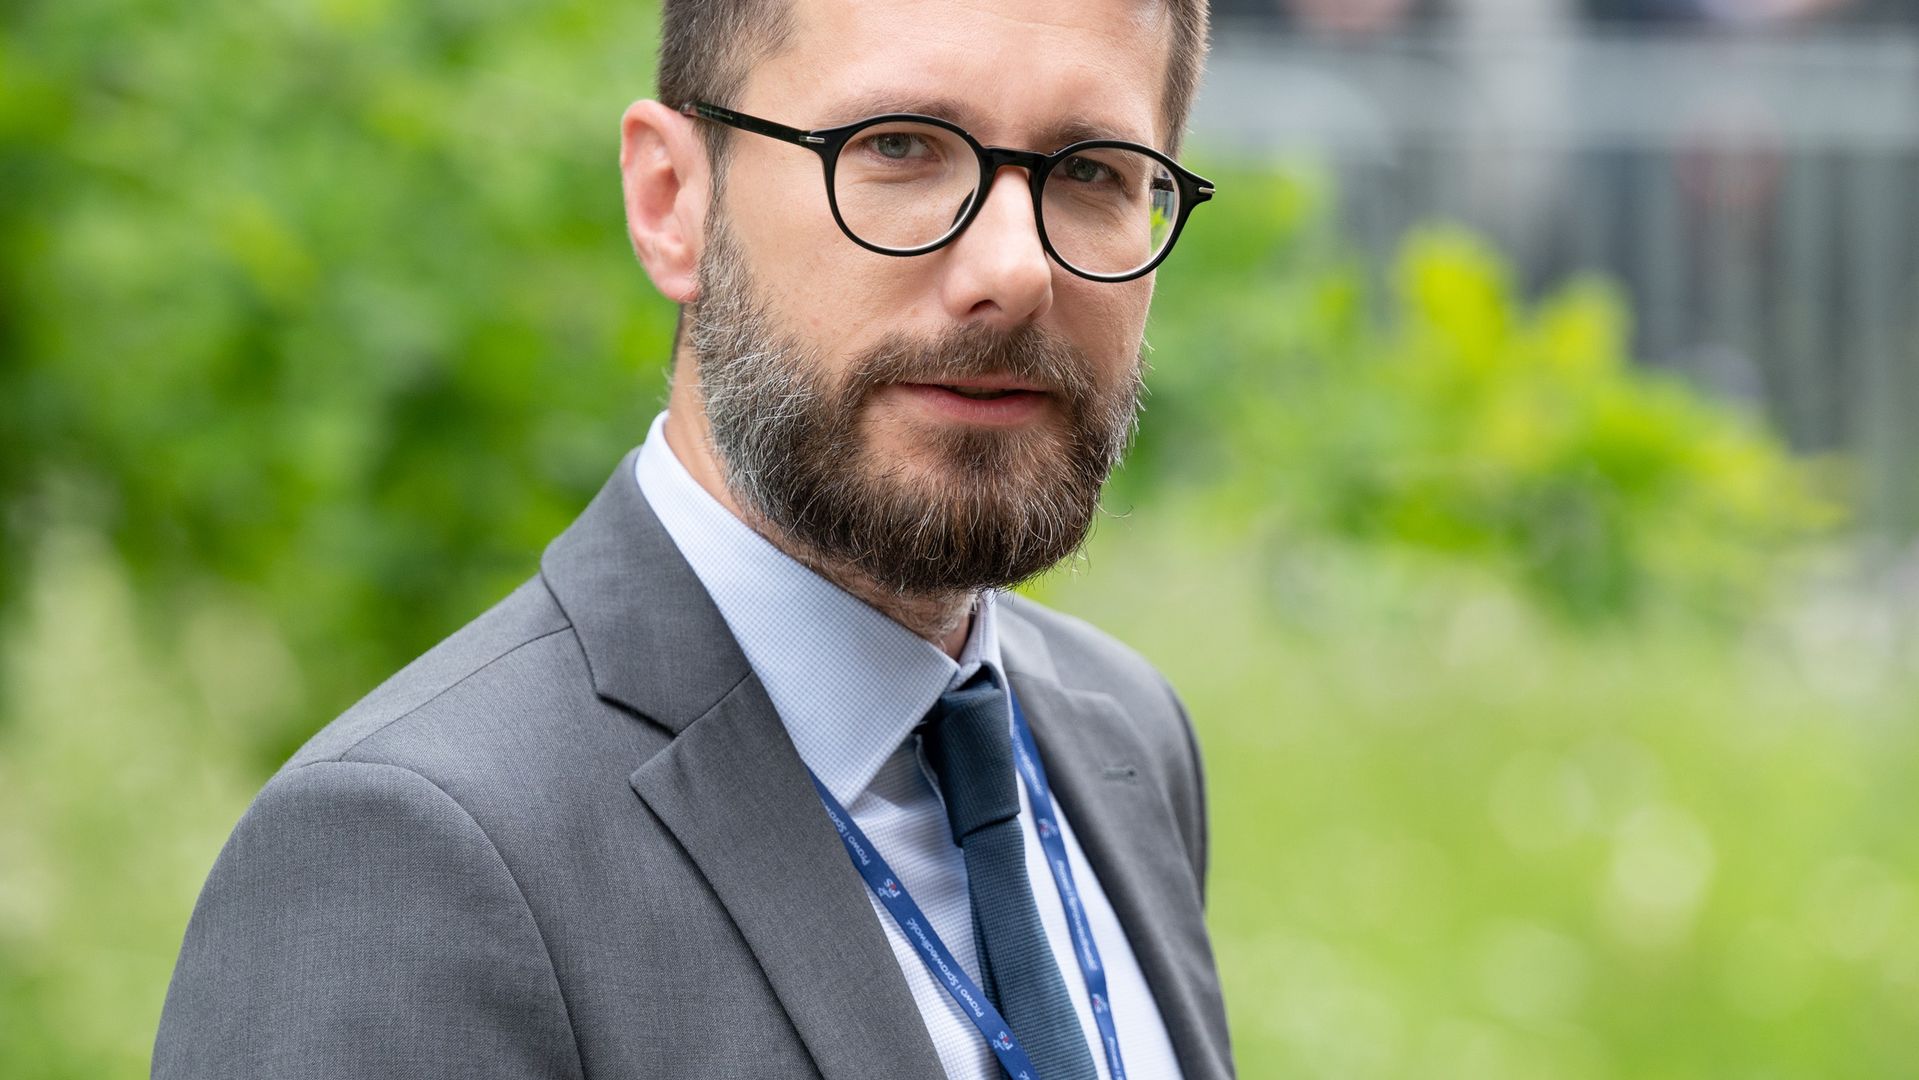 Radosław Fogiel od 2019 r. jest posłem z ramienia Prawa i Sprawiedliwości. Startuje także w obecnych wyborach parlamentarnych do Sejmu z okręgu radomskiego.